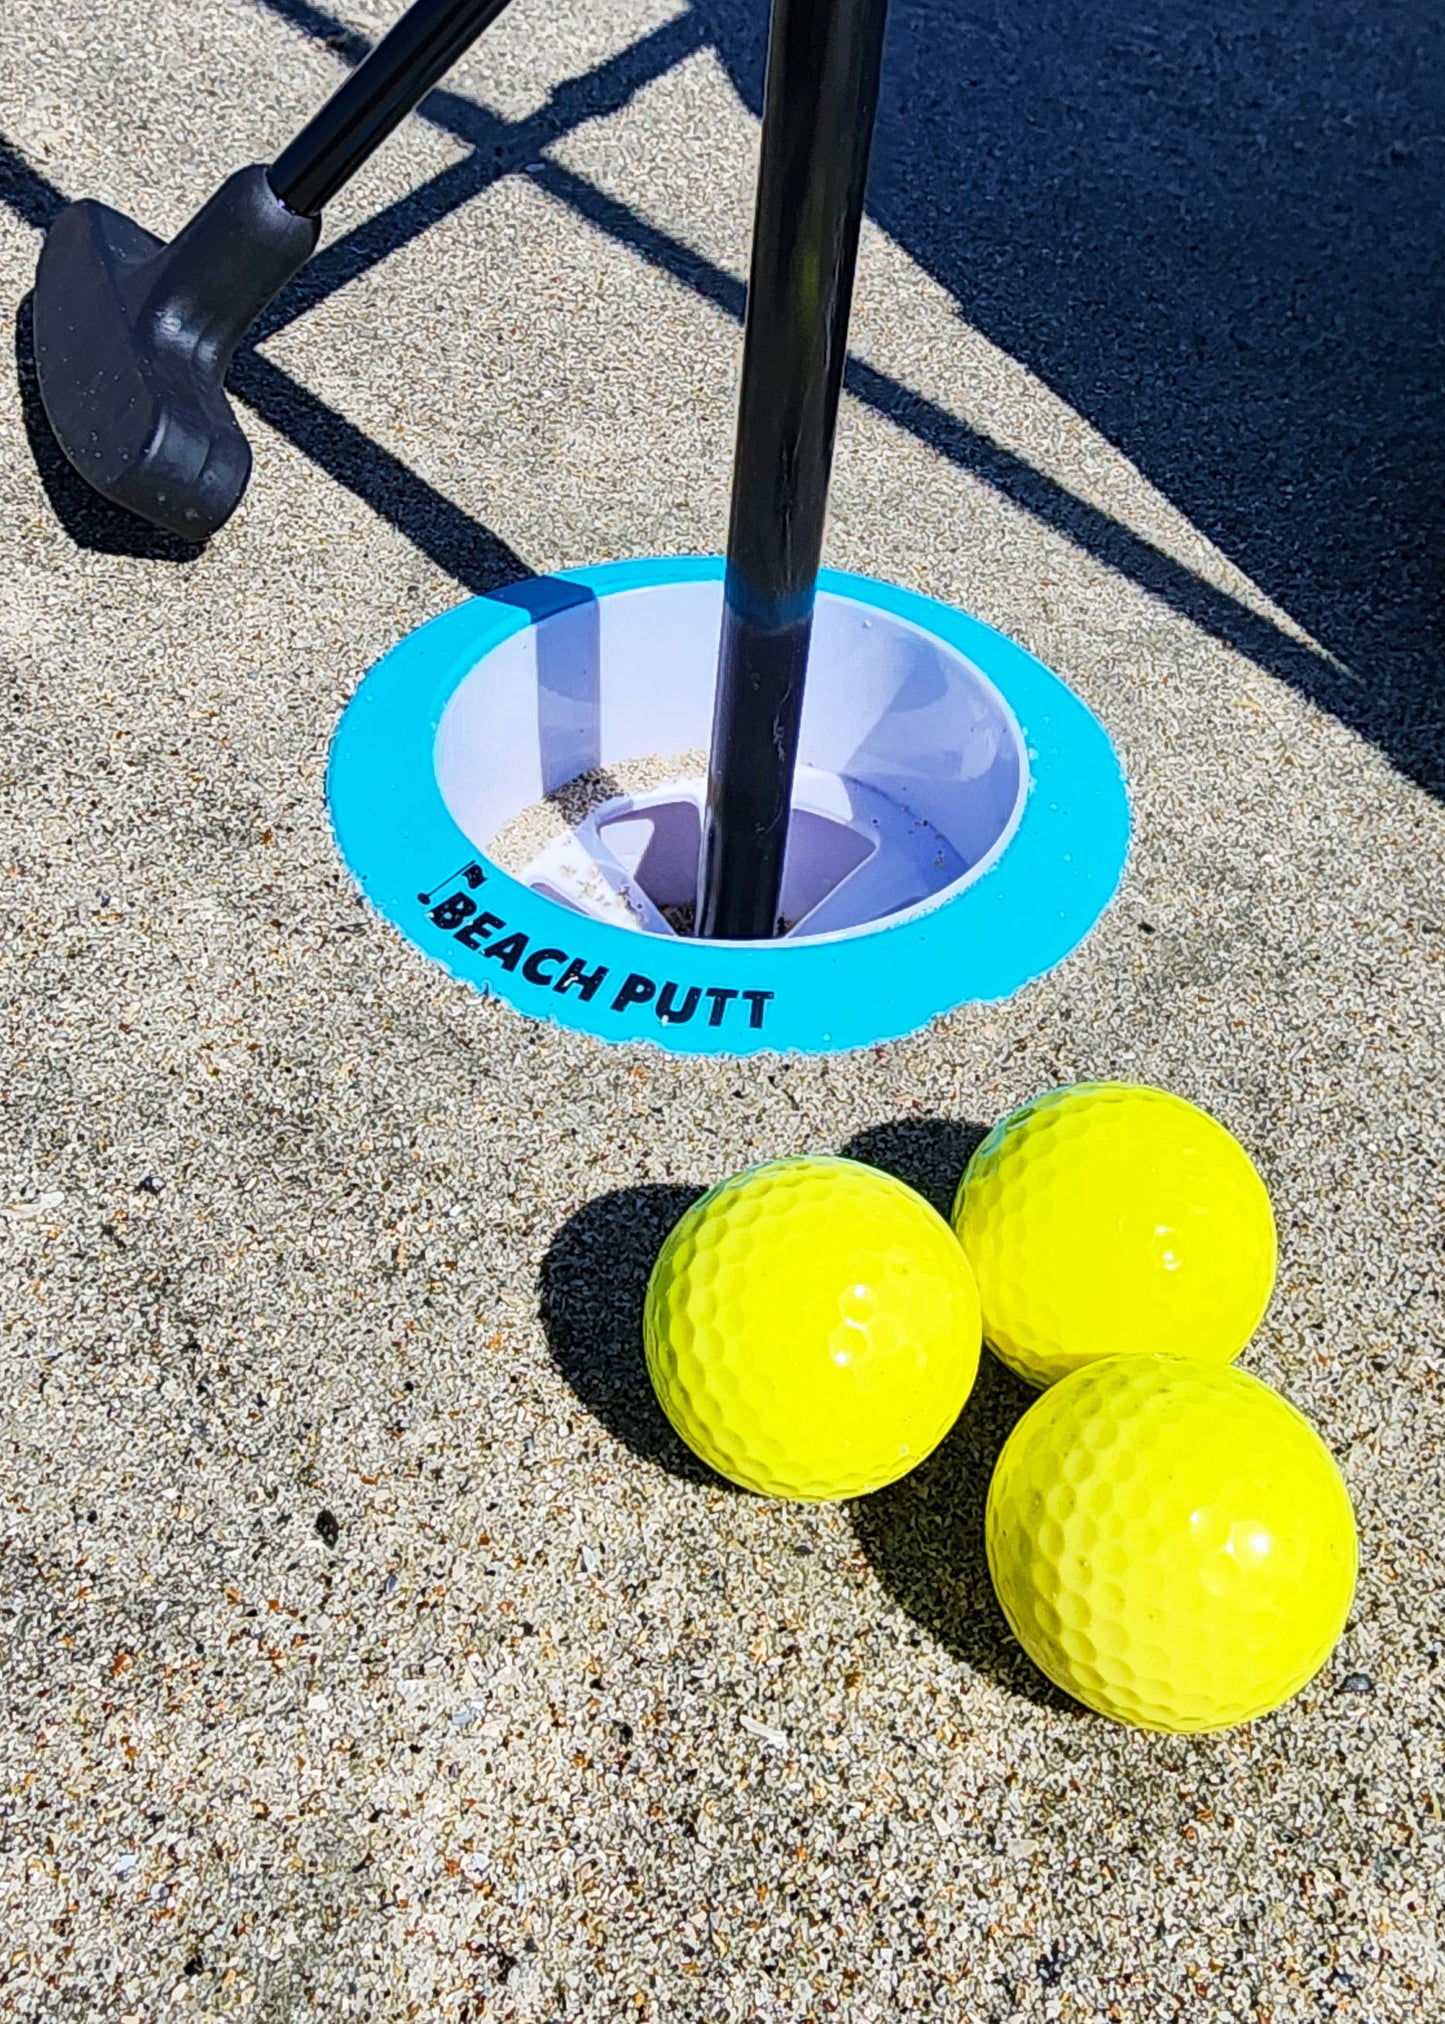 Original Beach Putt - Beach Golf Set - with (2) Adjustable Beach Putt Putters